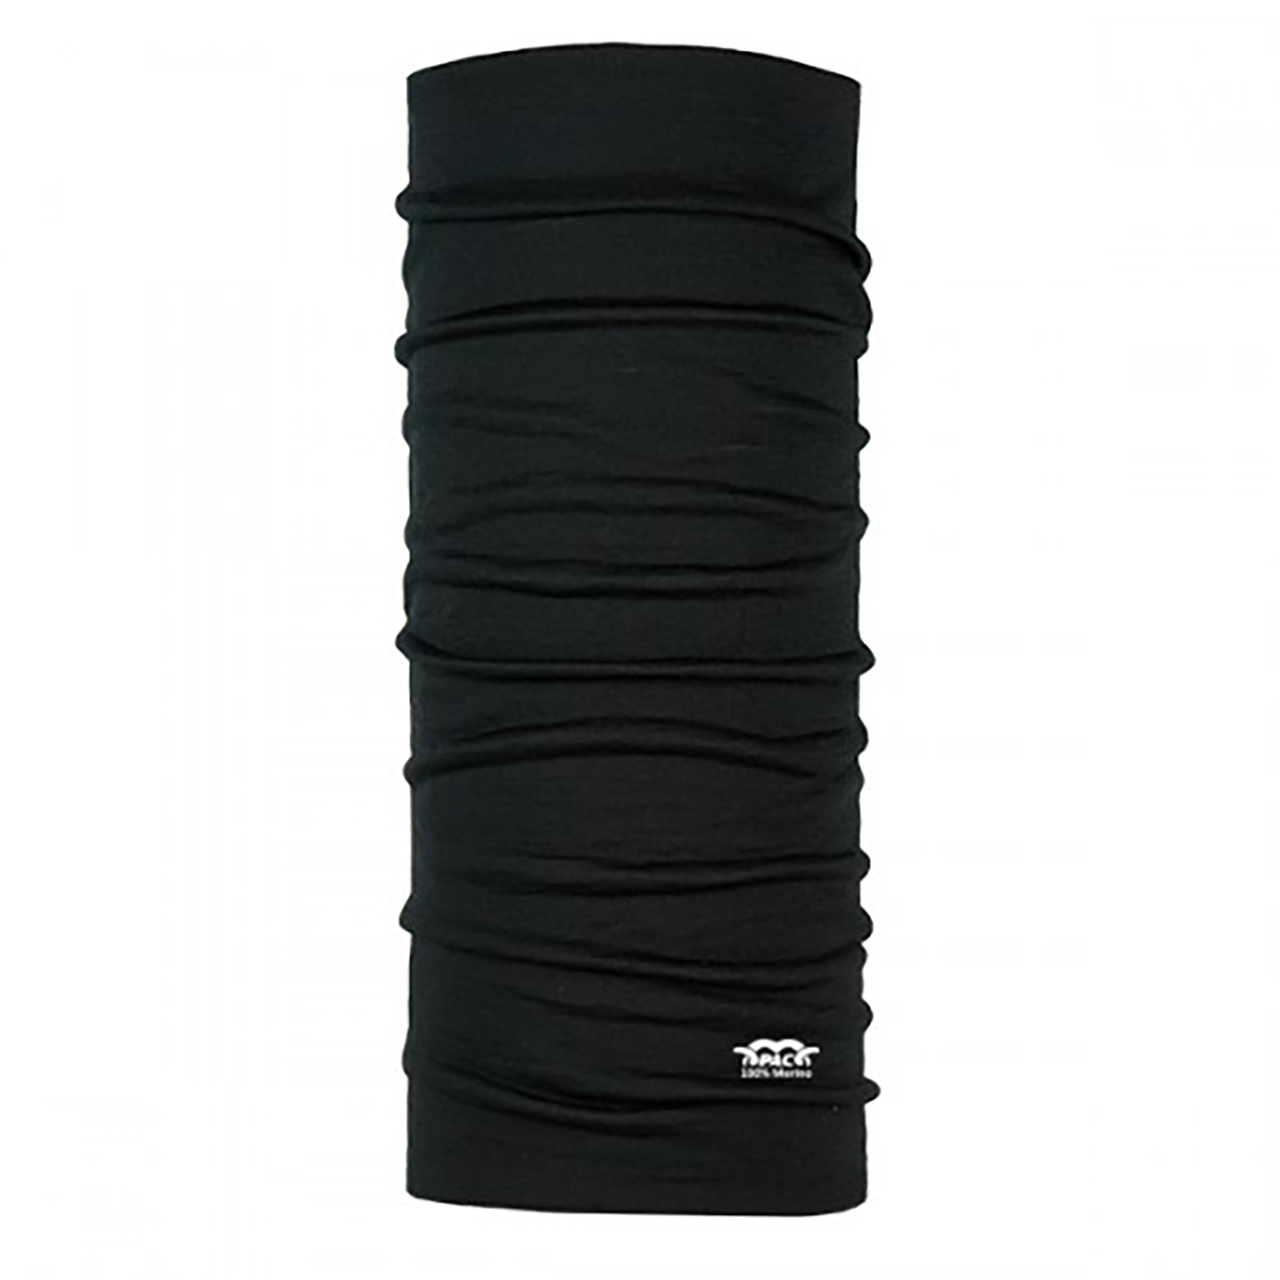 دستمال سر و گردن پک مدل Merino Wool Total Black